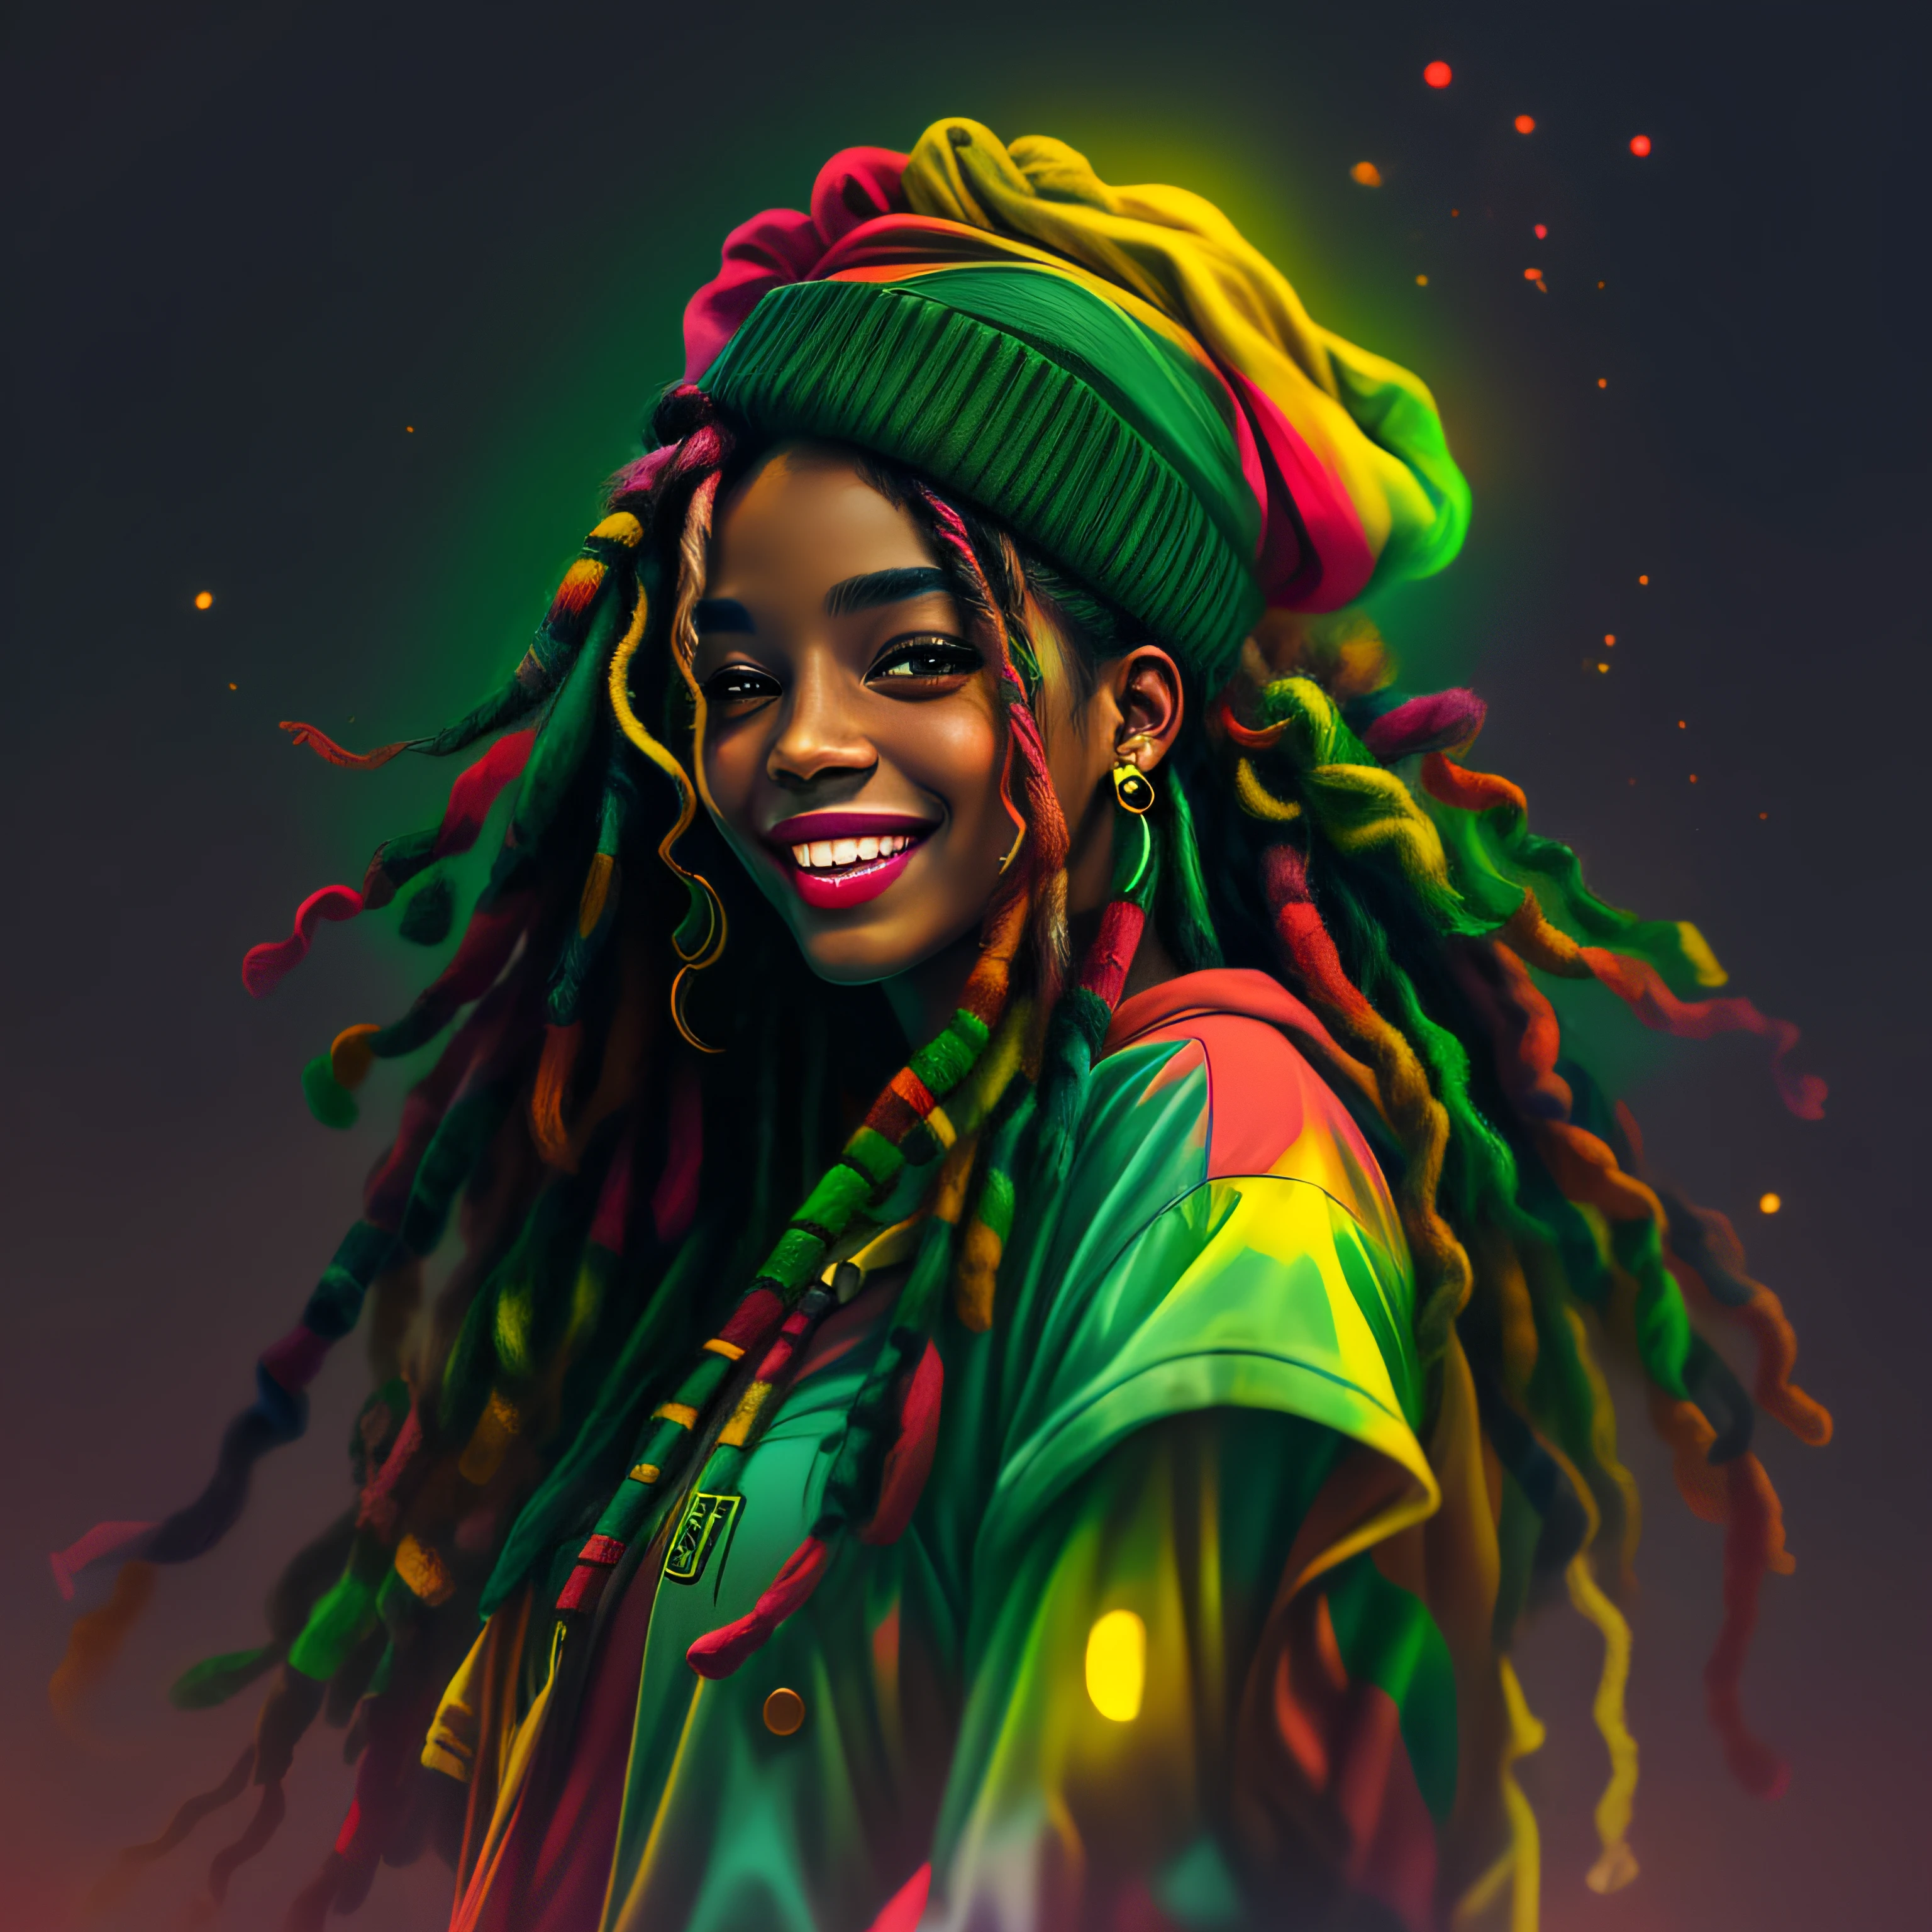 Vektorgrafiken, blur art (1 lächelndes Rasta-Mädchen in reggaefarbener Kleidung) Mafia, Kinobeleuchtung im Neon-Stil